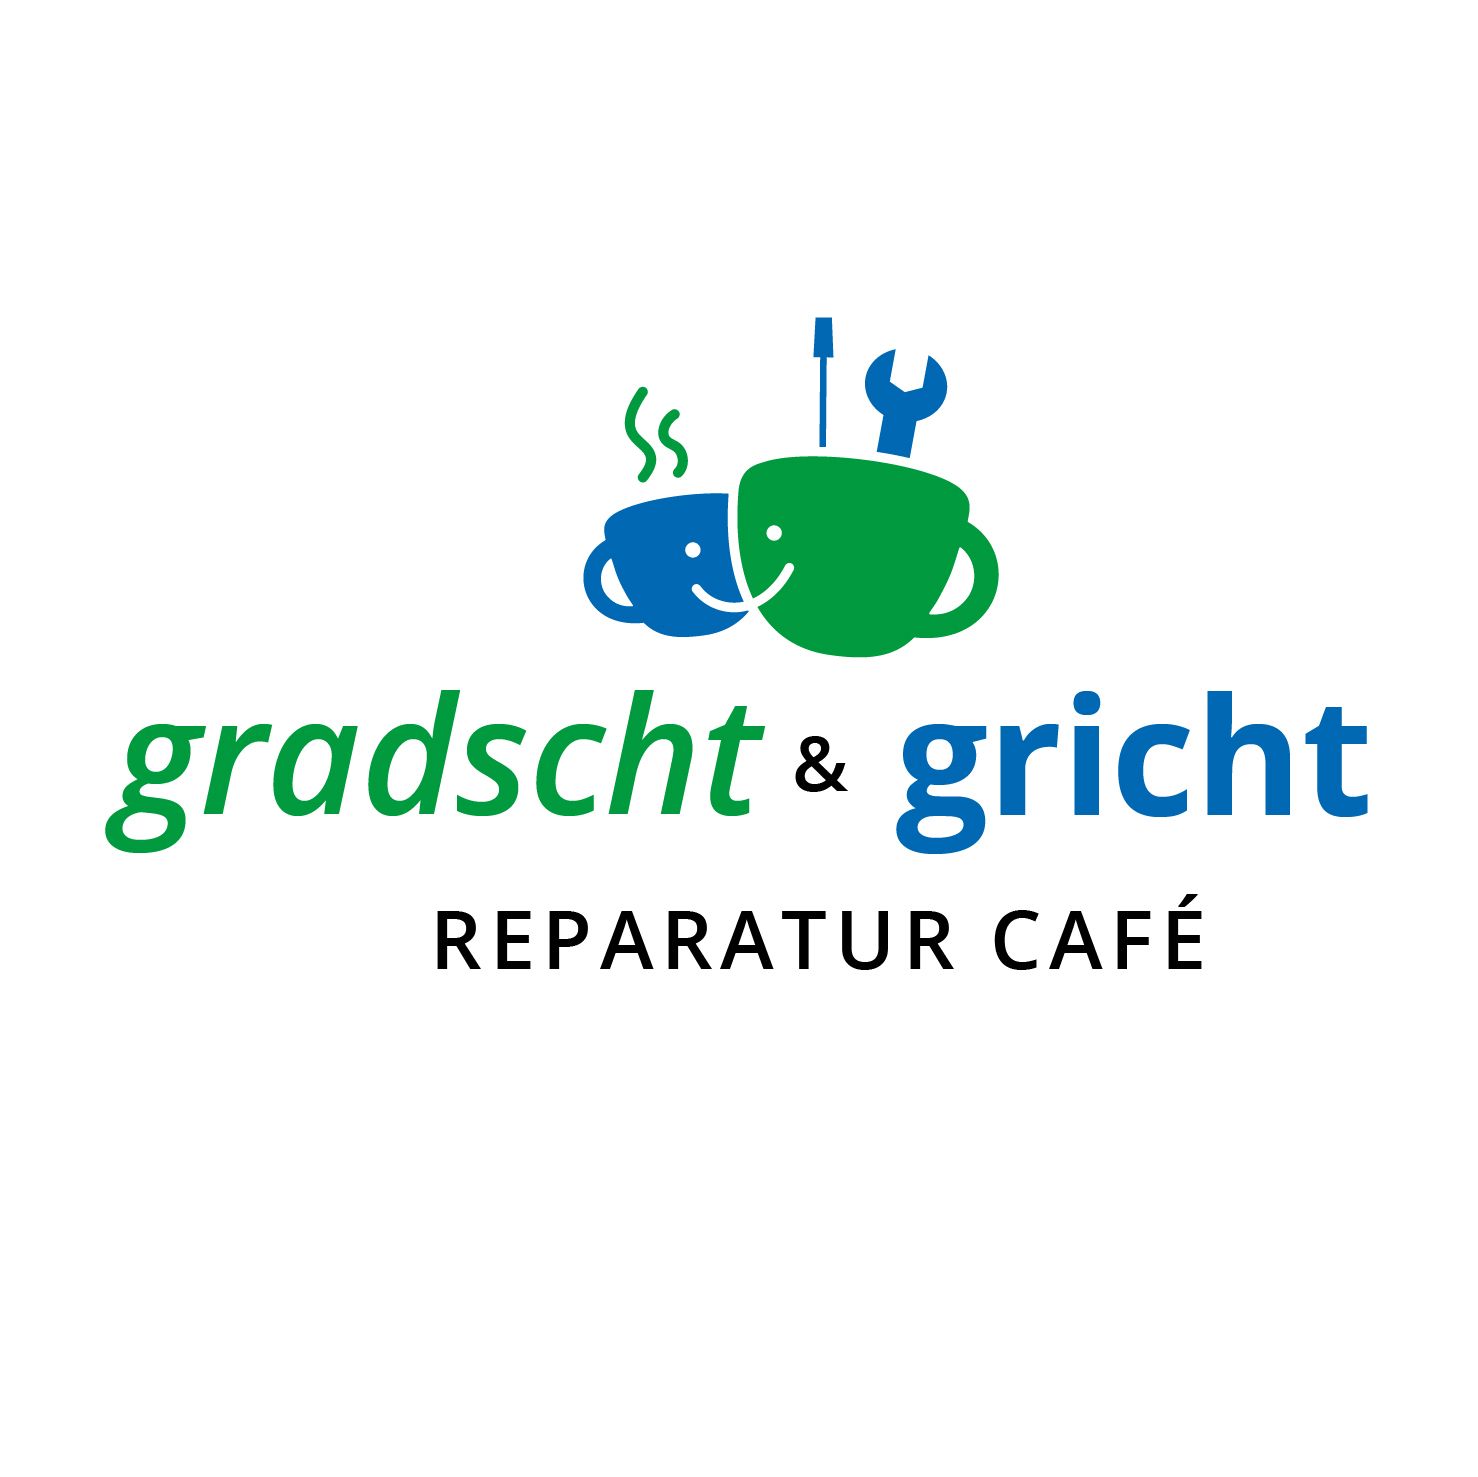 Zur Pressemeldung: Reparatur Café gradscht&gricht